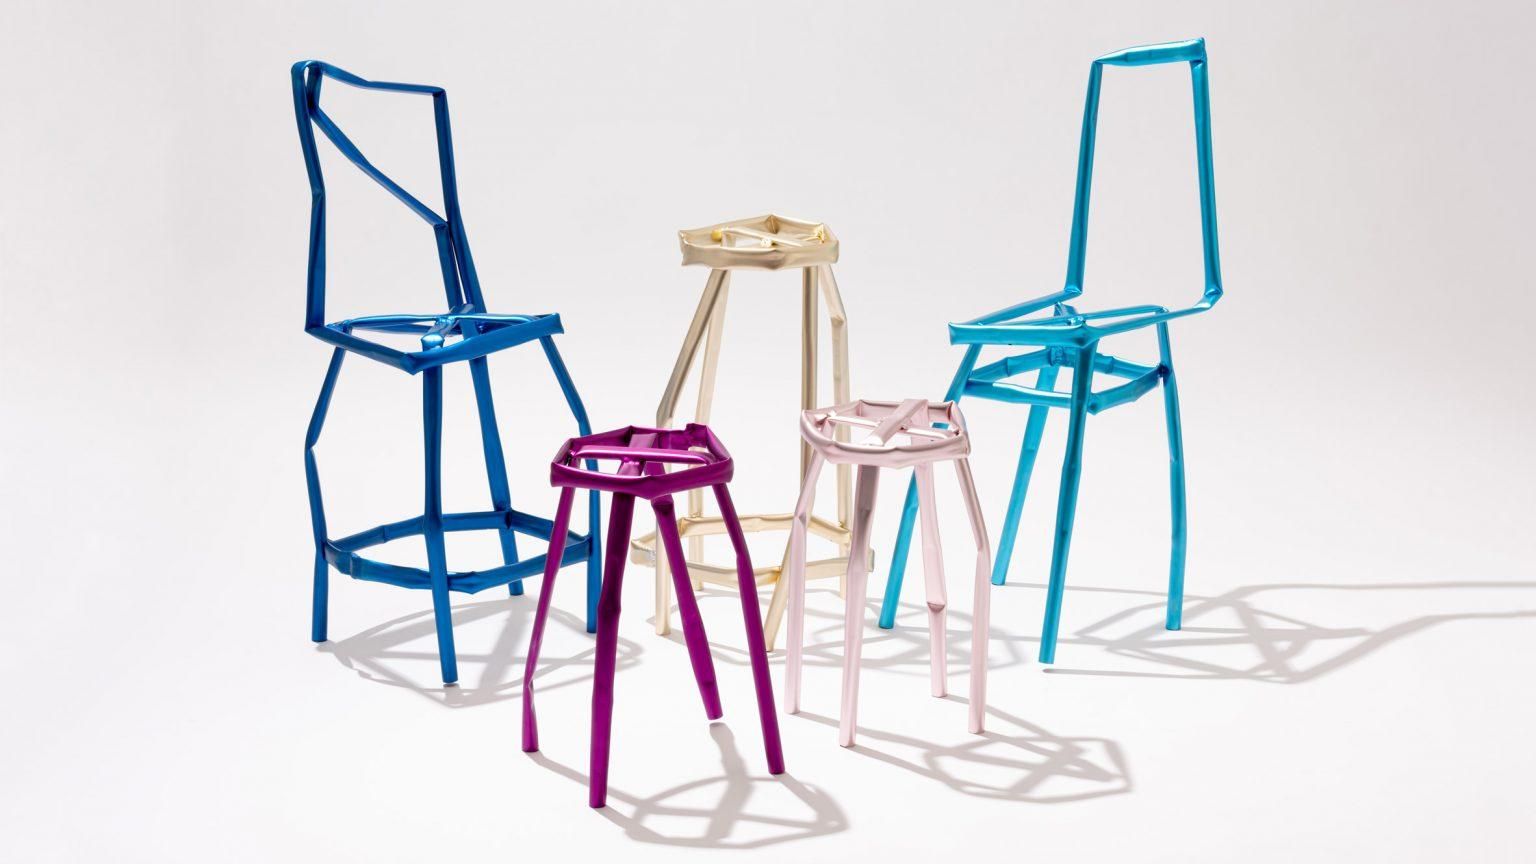 Мятая мебель: фото погнутых и кривых стульев от дизайнера из Южной Кореи